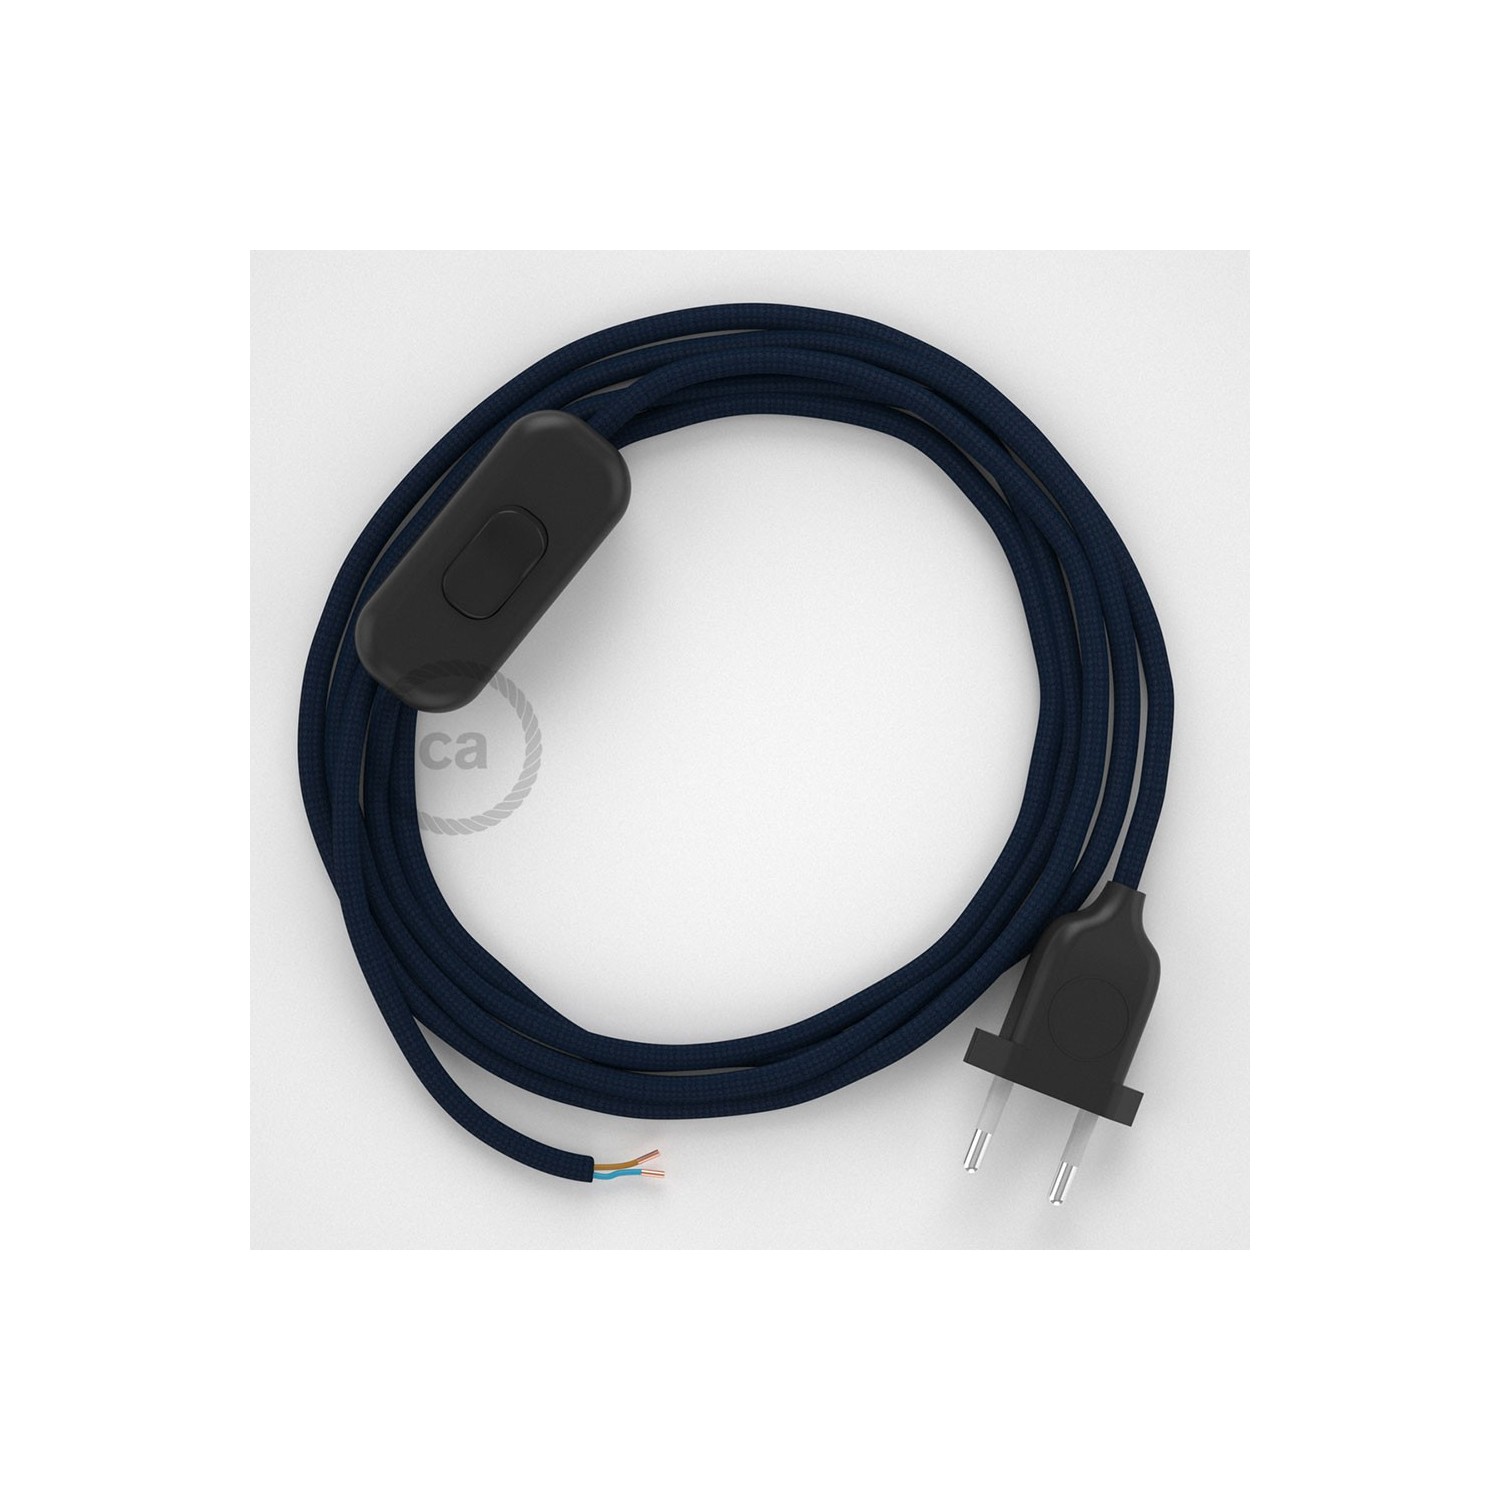 Cablaggio per lampada, cavo RM20 Effetto Seta Blu scuro 1,80 m. Scegli il colore dell'interruttore e della spina.